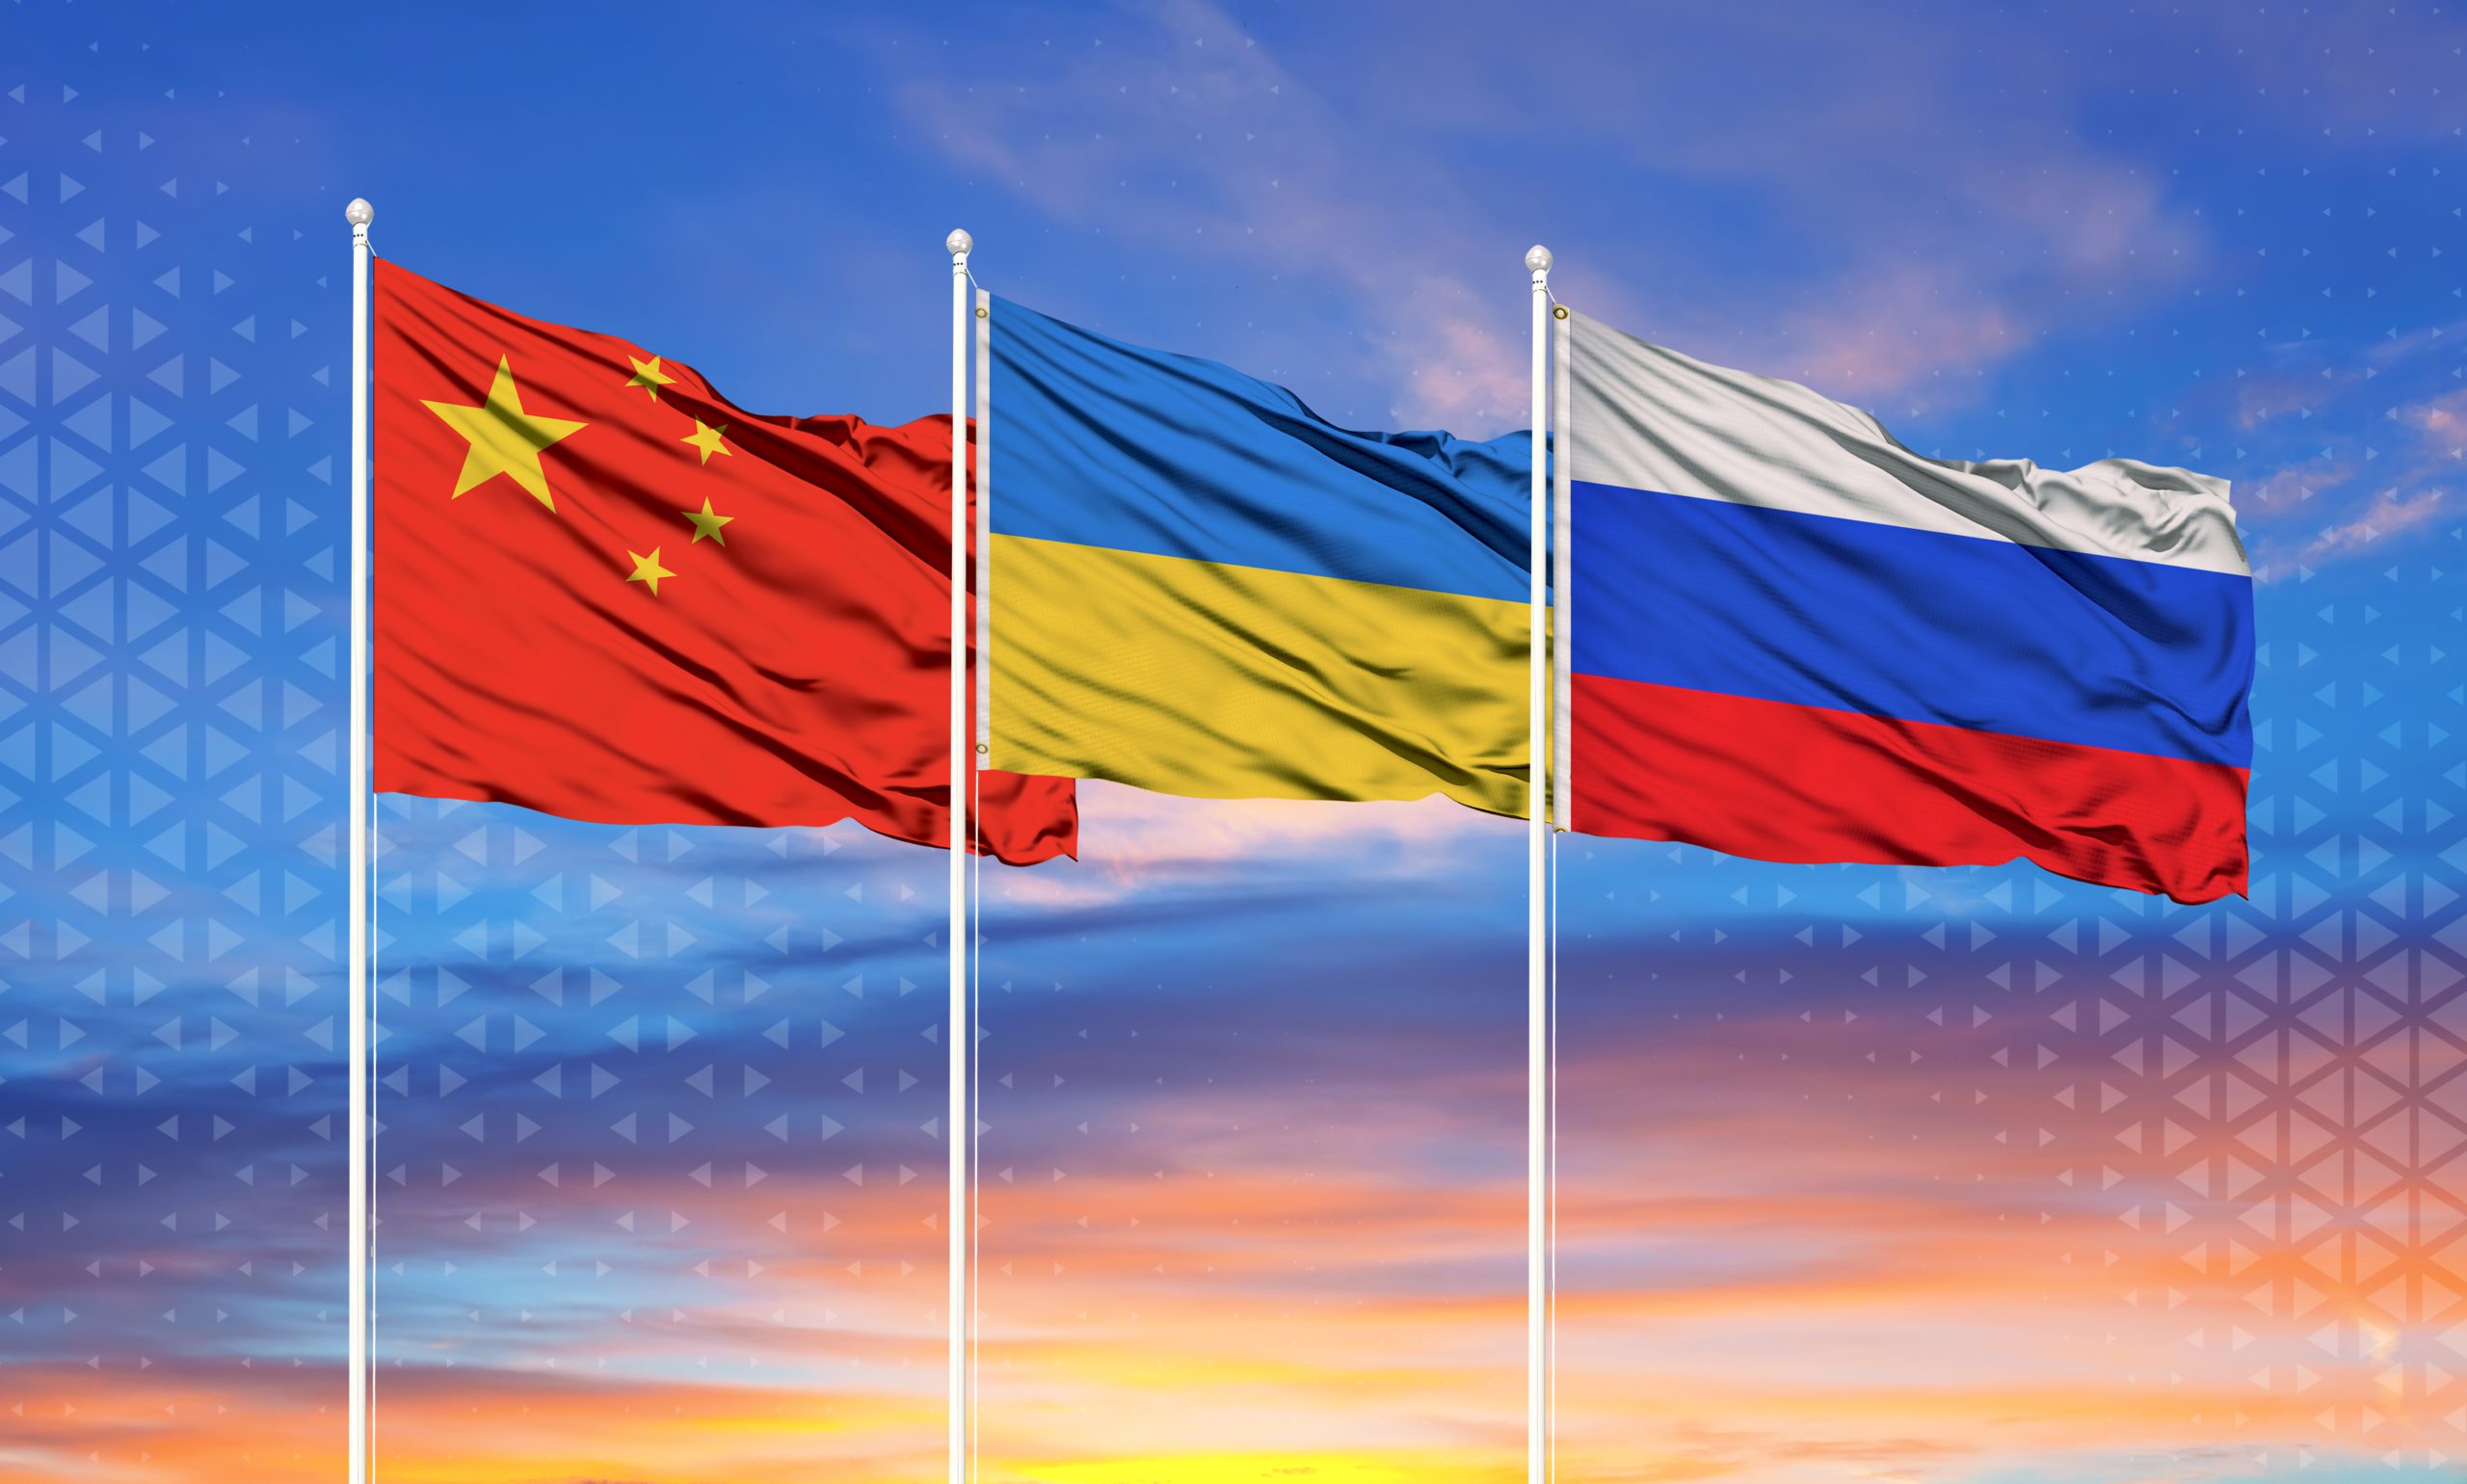 Китайский военный аналитик винит Украину в неспособности «вести прямые переговоры с Россией» в продолжающемся конфликте